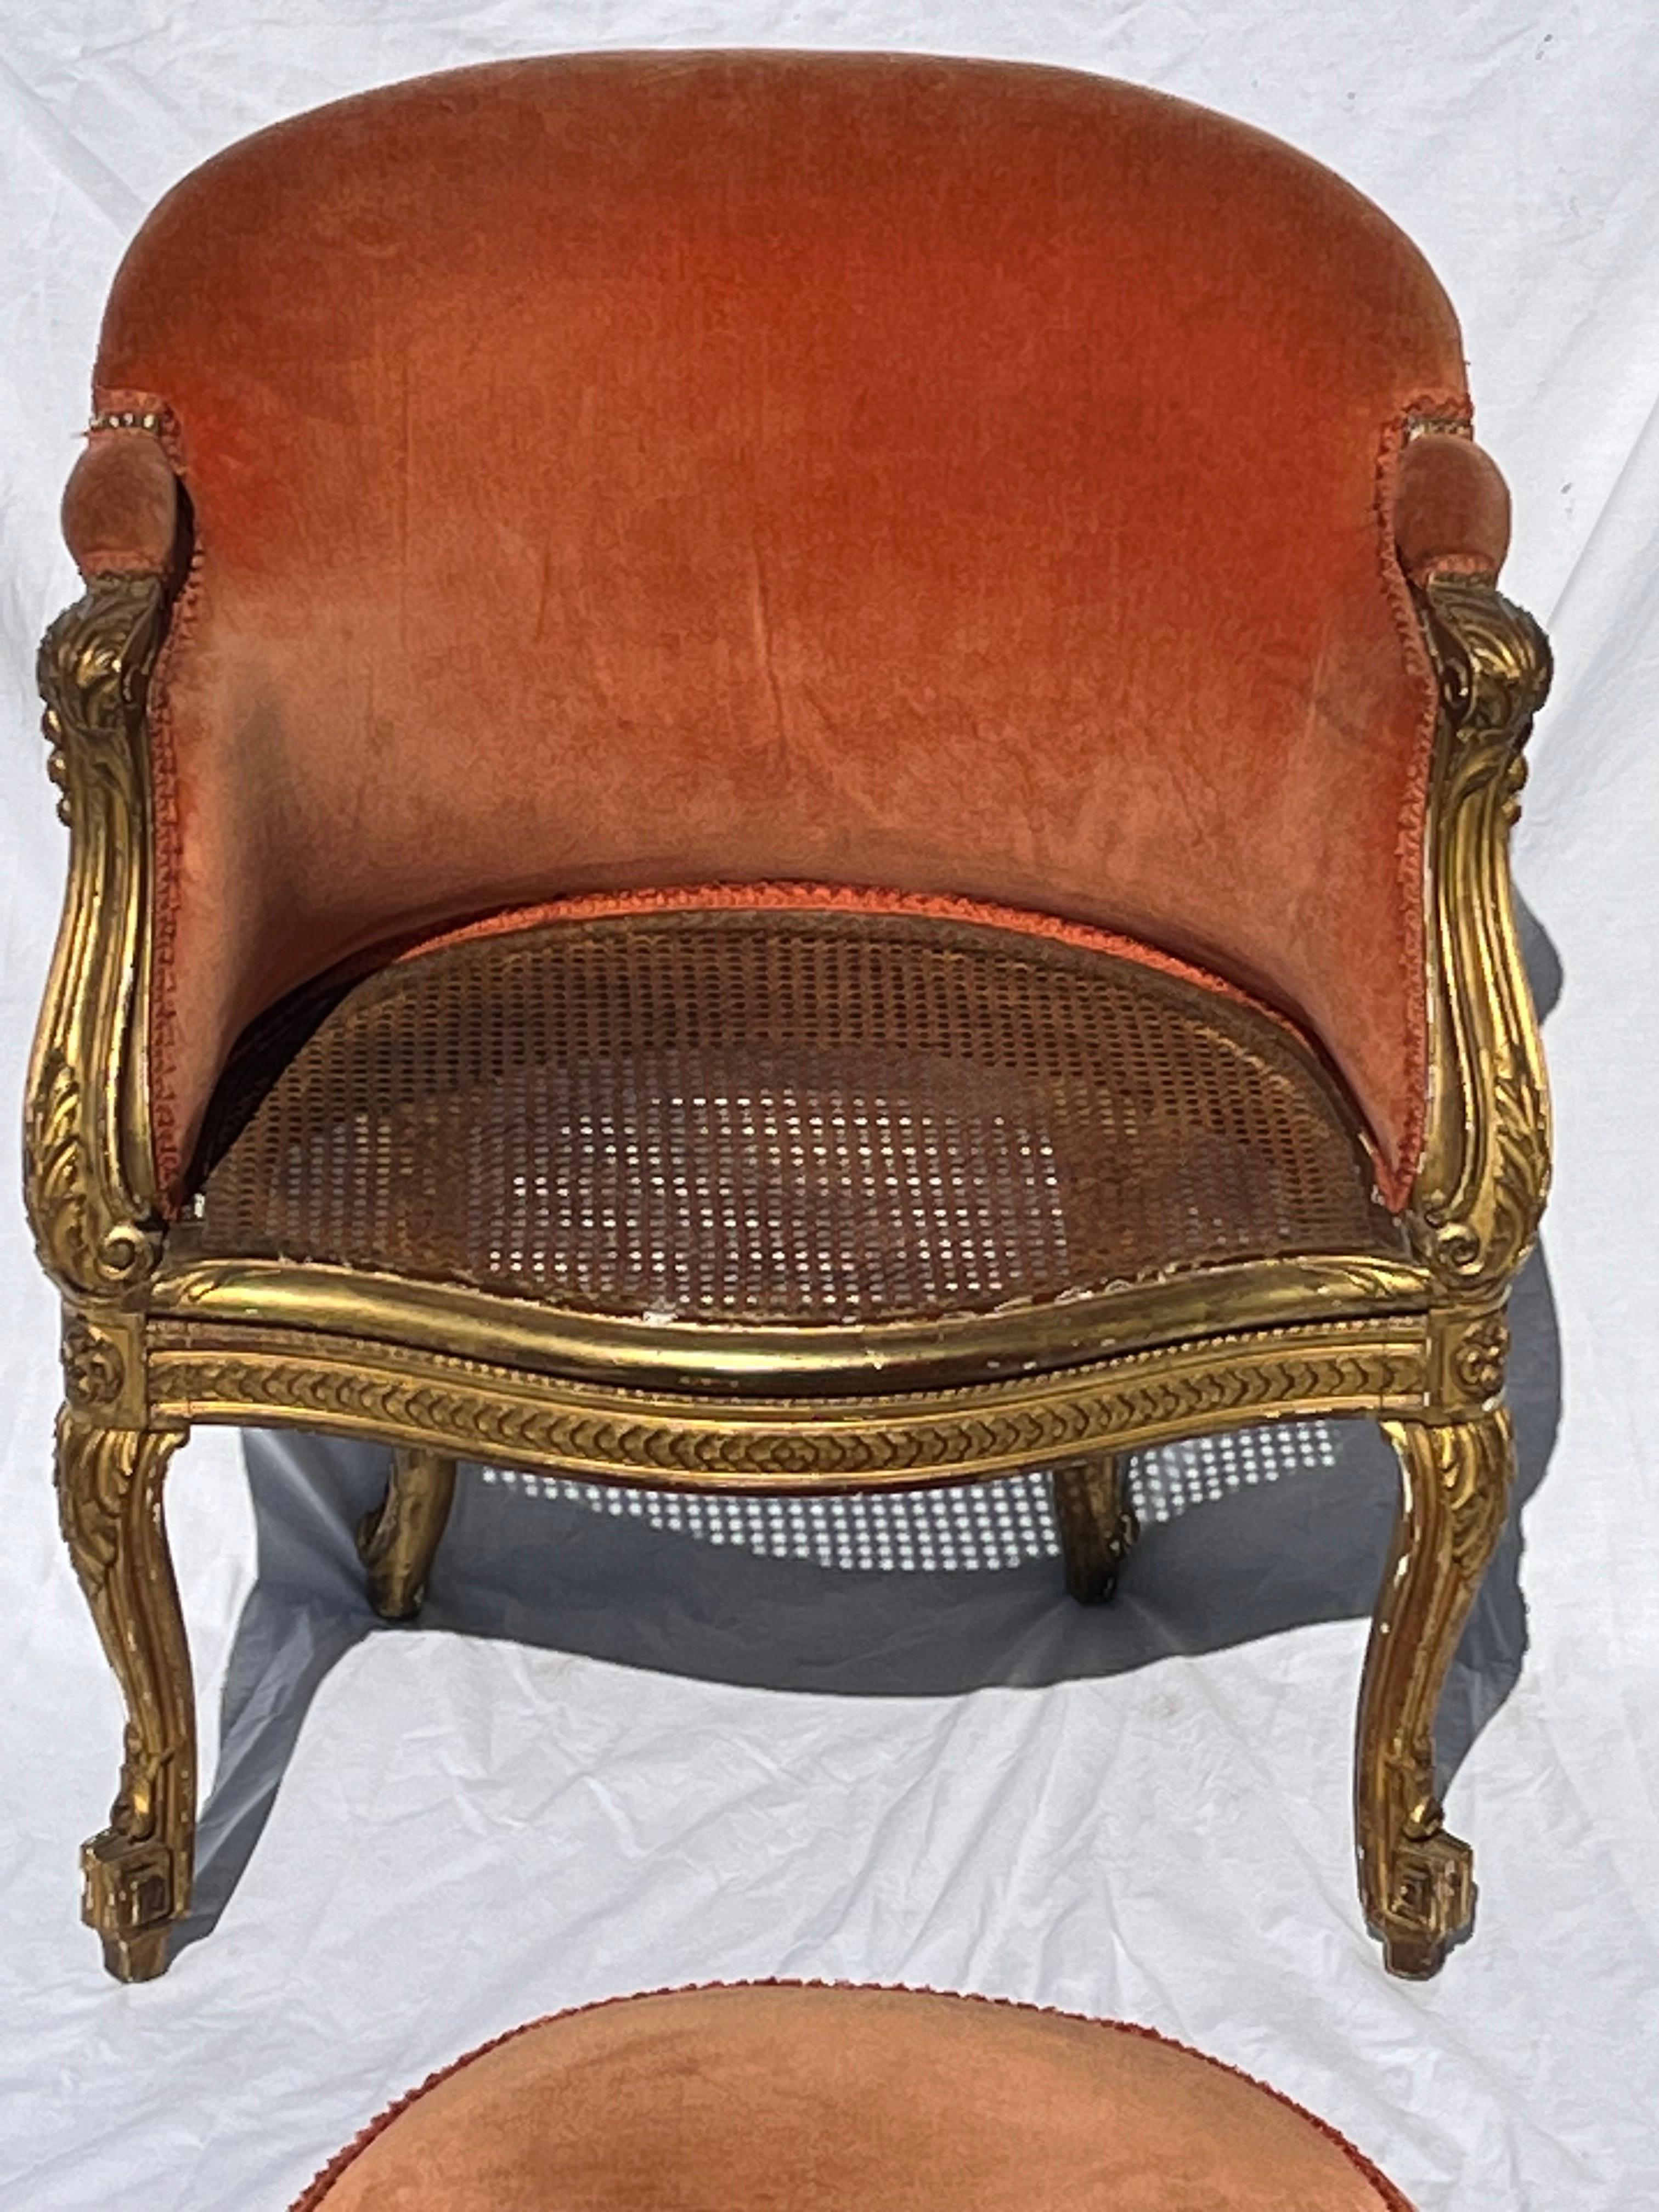 Antiquité française dorée et sculptée 19ème siècle Cane fauteuil Bergere tapissé en vente 1